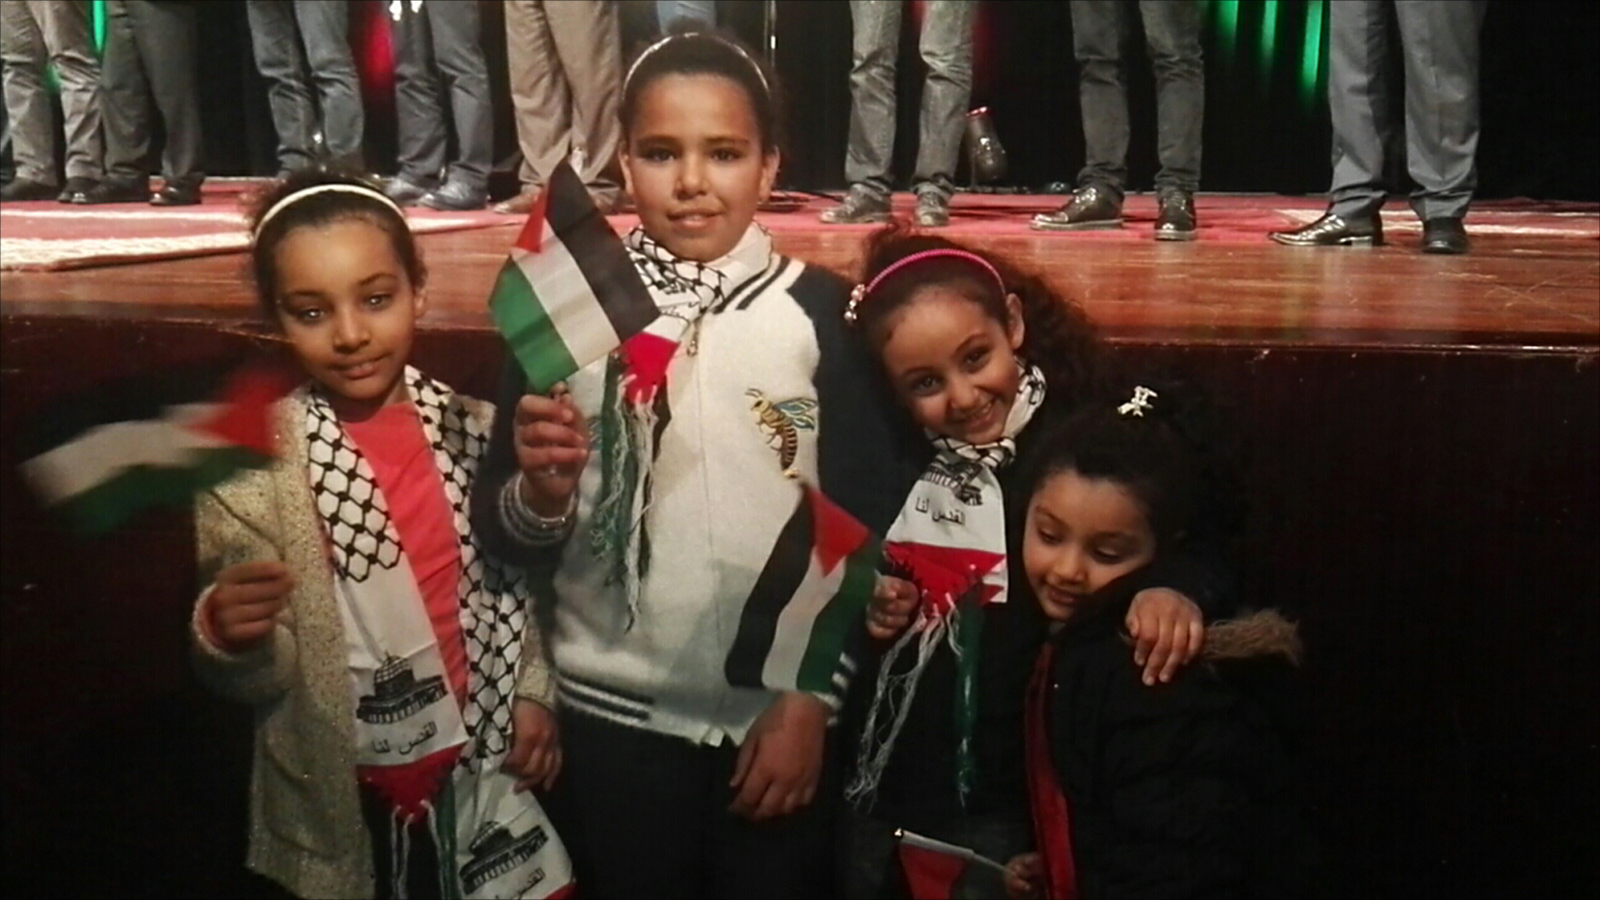 ‪أطفال في المهرجان الاحتفالي بأسرى فلسطين المحررين‬ أطفال في المهرجان الاحتفالي بأسرى فلسطين المحررين (الجزيرة)